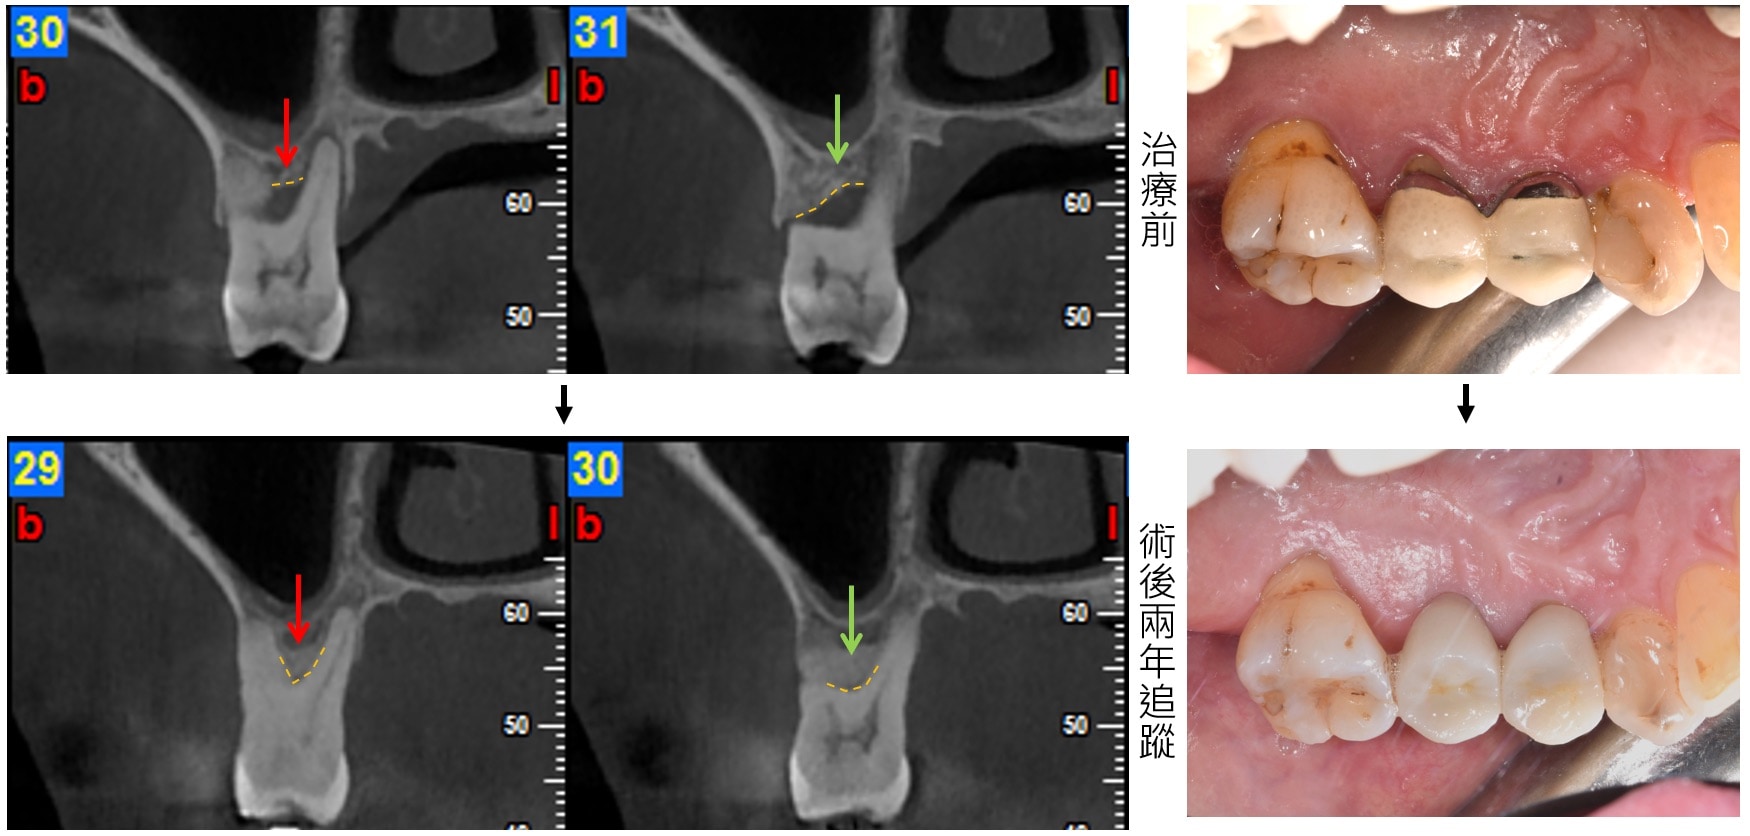 嚴重牙周病治療-補骨再生手術-案例7-手術前後對比-李晉成醫師-台中